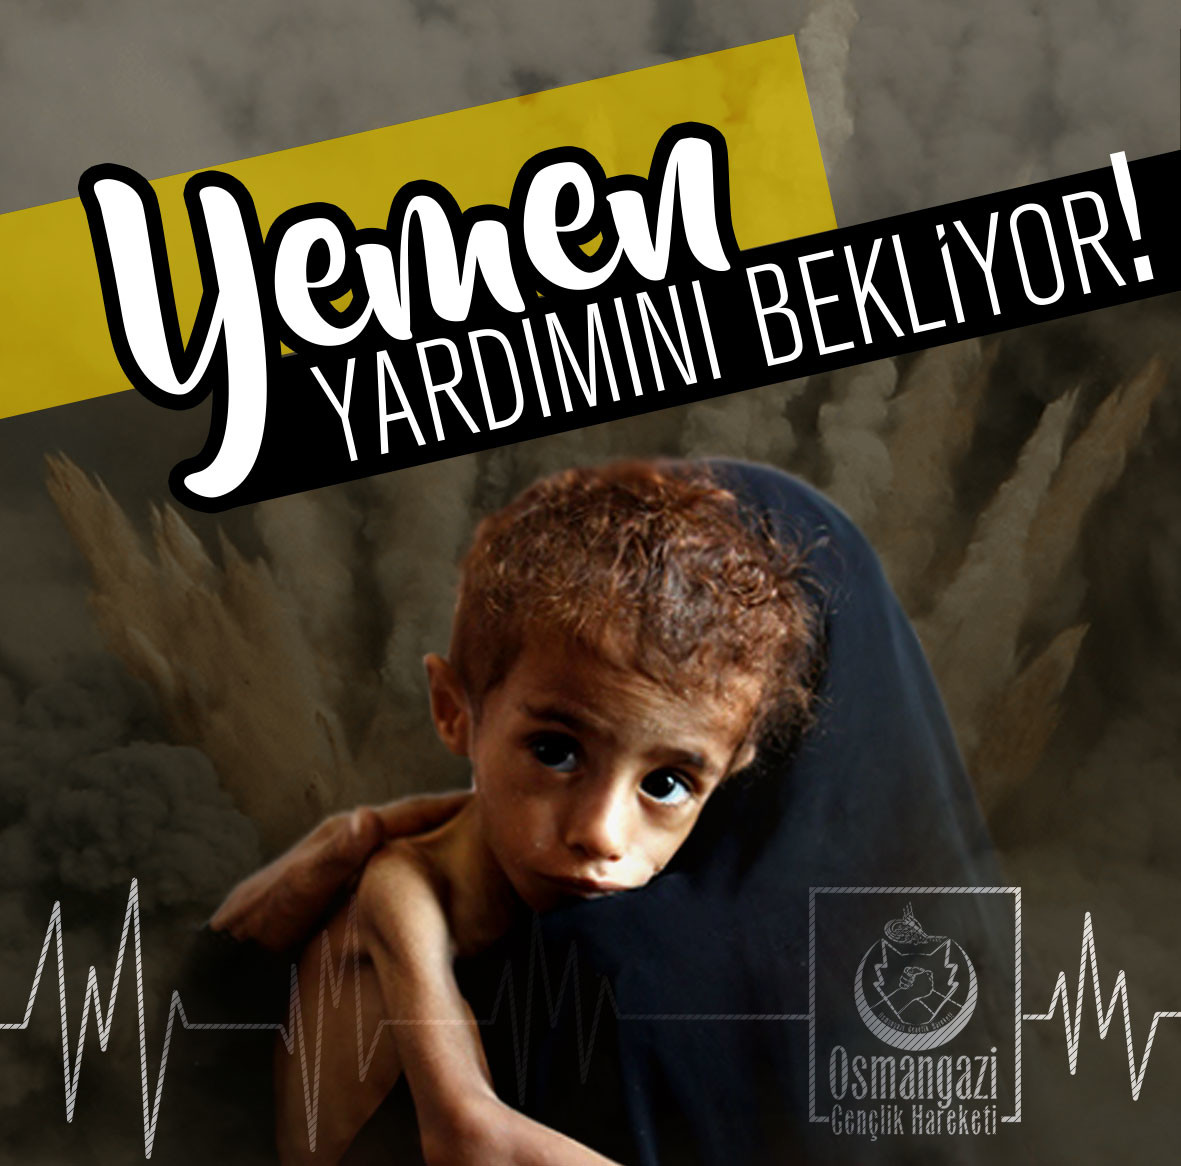 Yemen Yardımını bekliyor 37